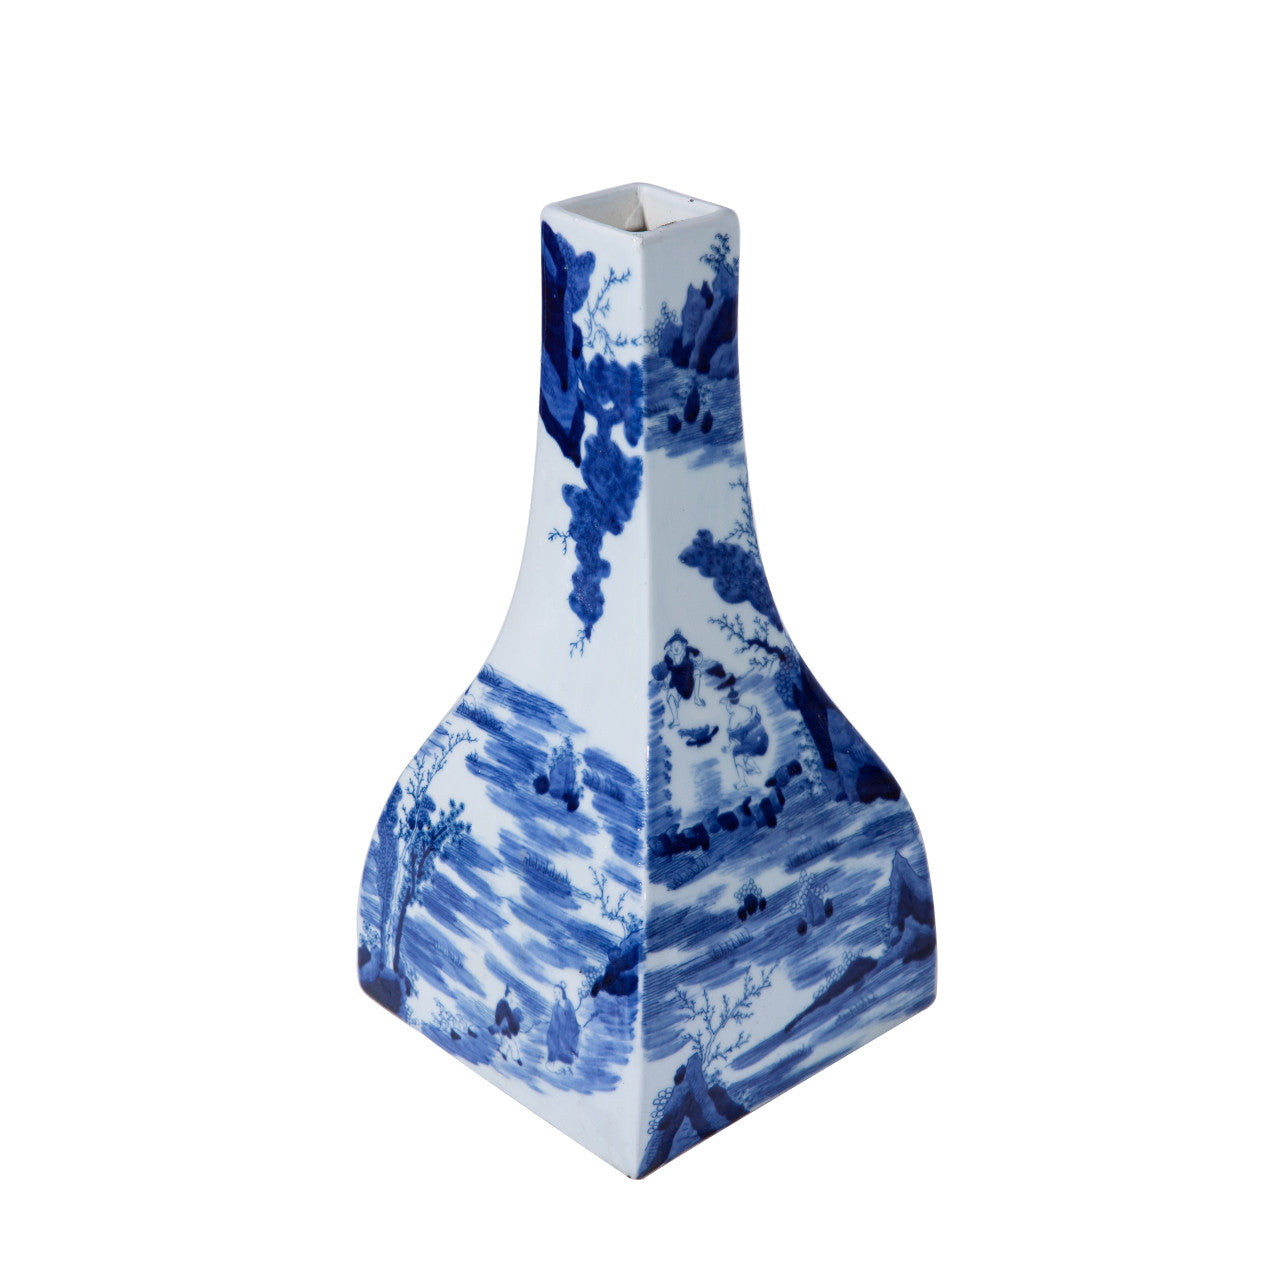 Blue & White River Village Tapered Square Vase